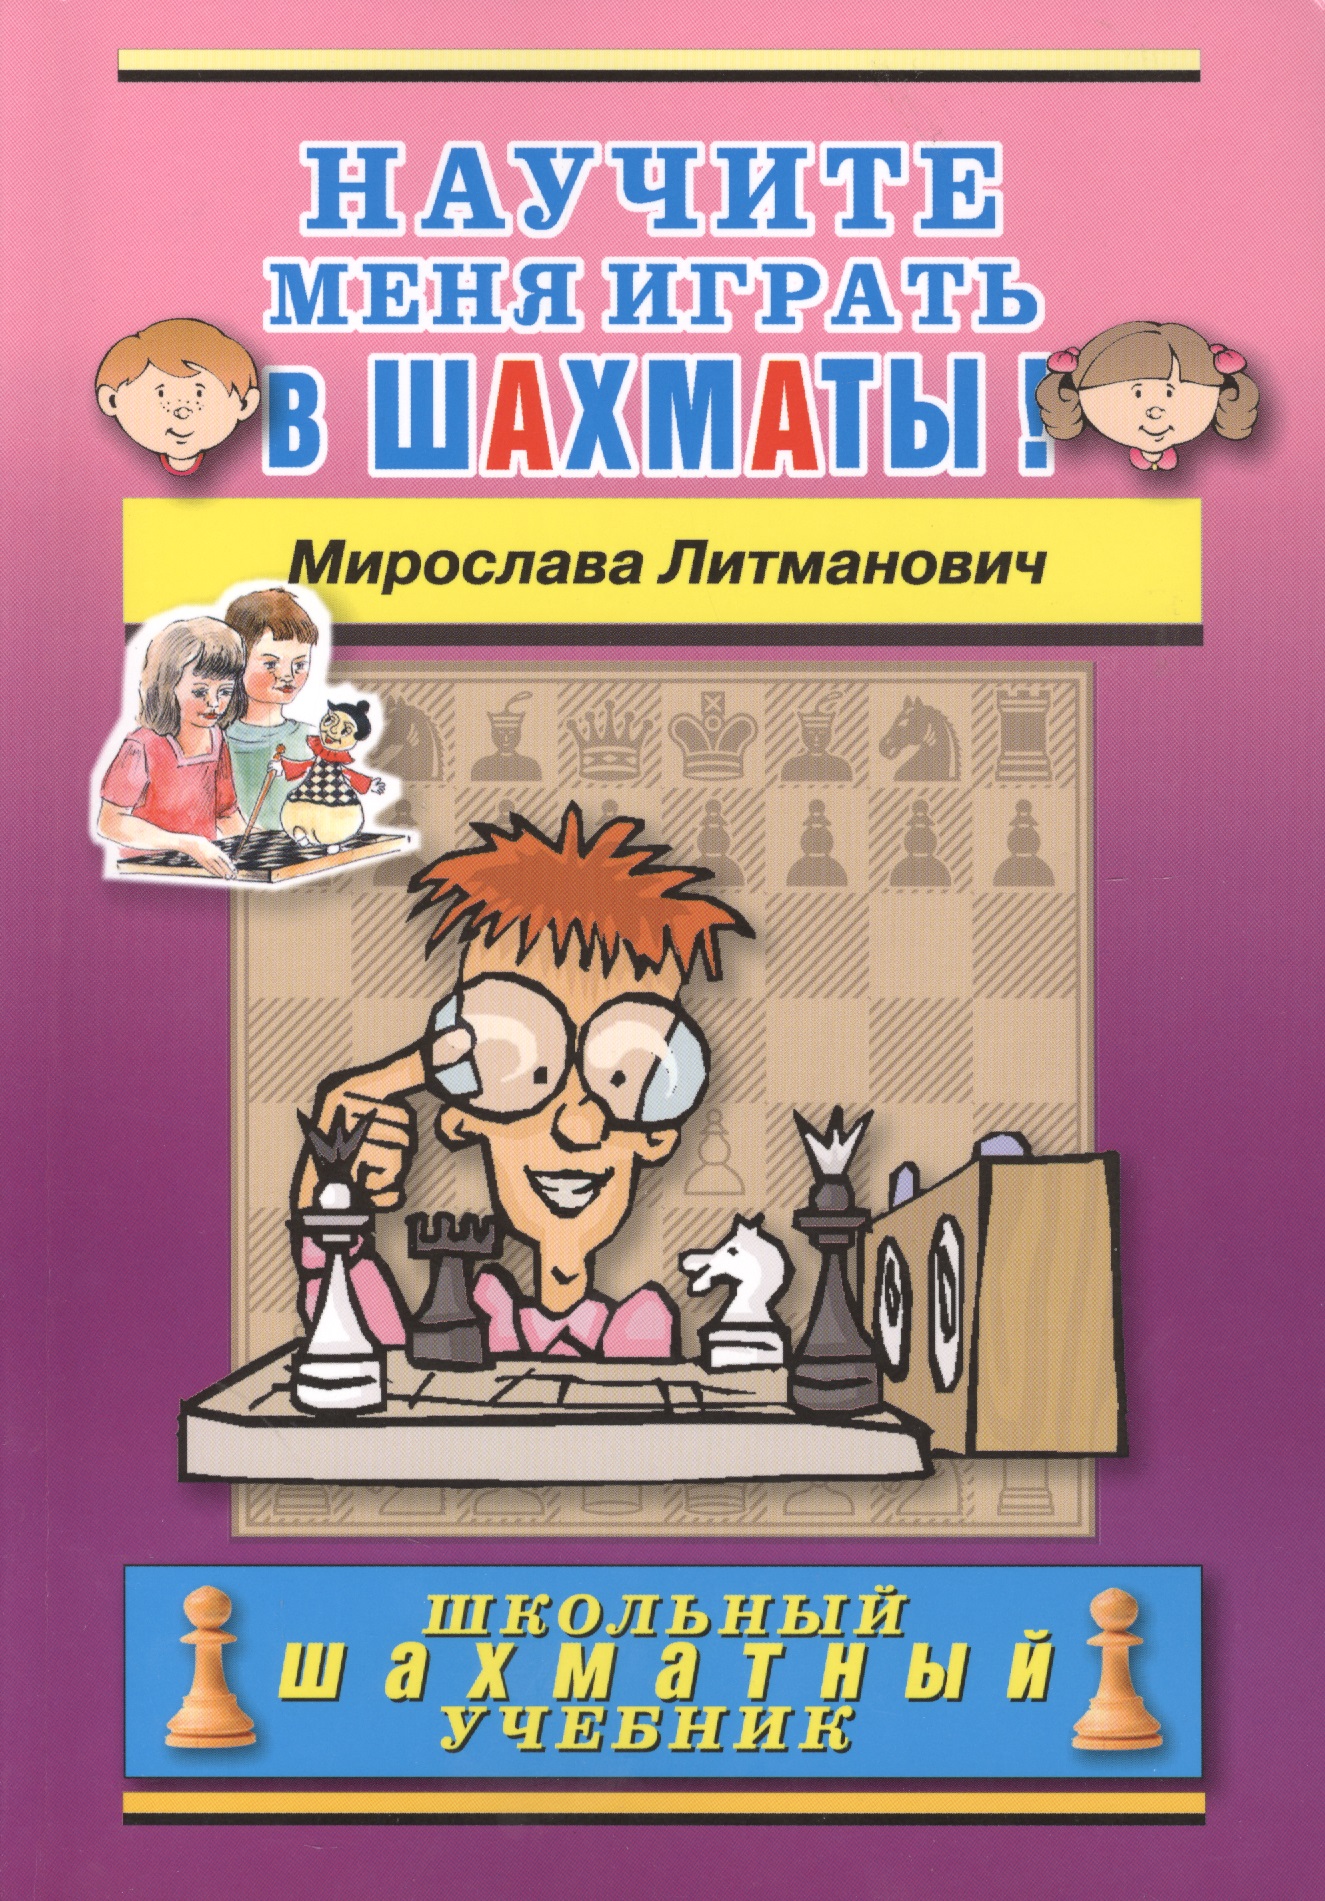 Литманович Мирослава Научите меня играть в шахматы!